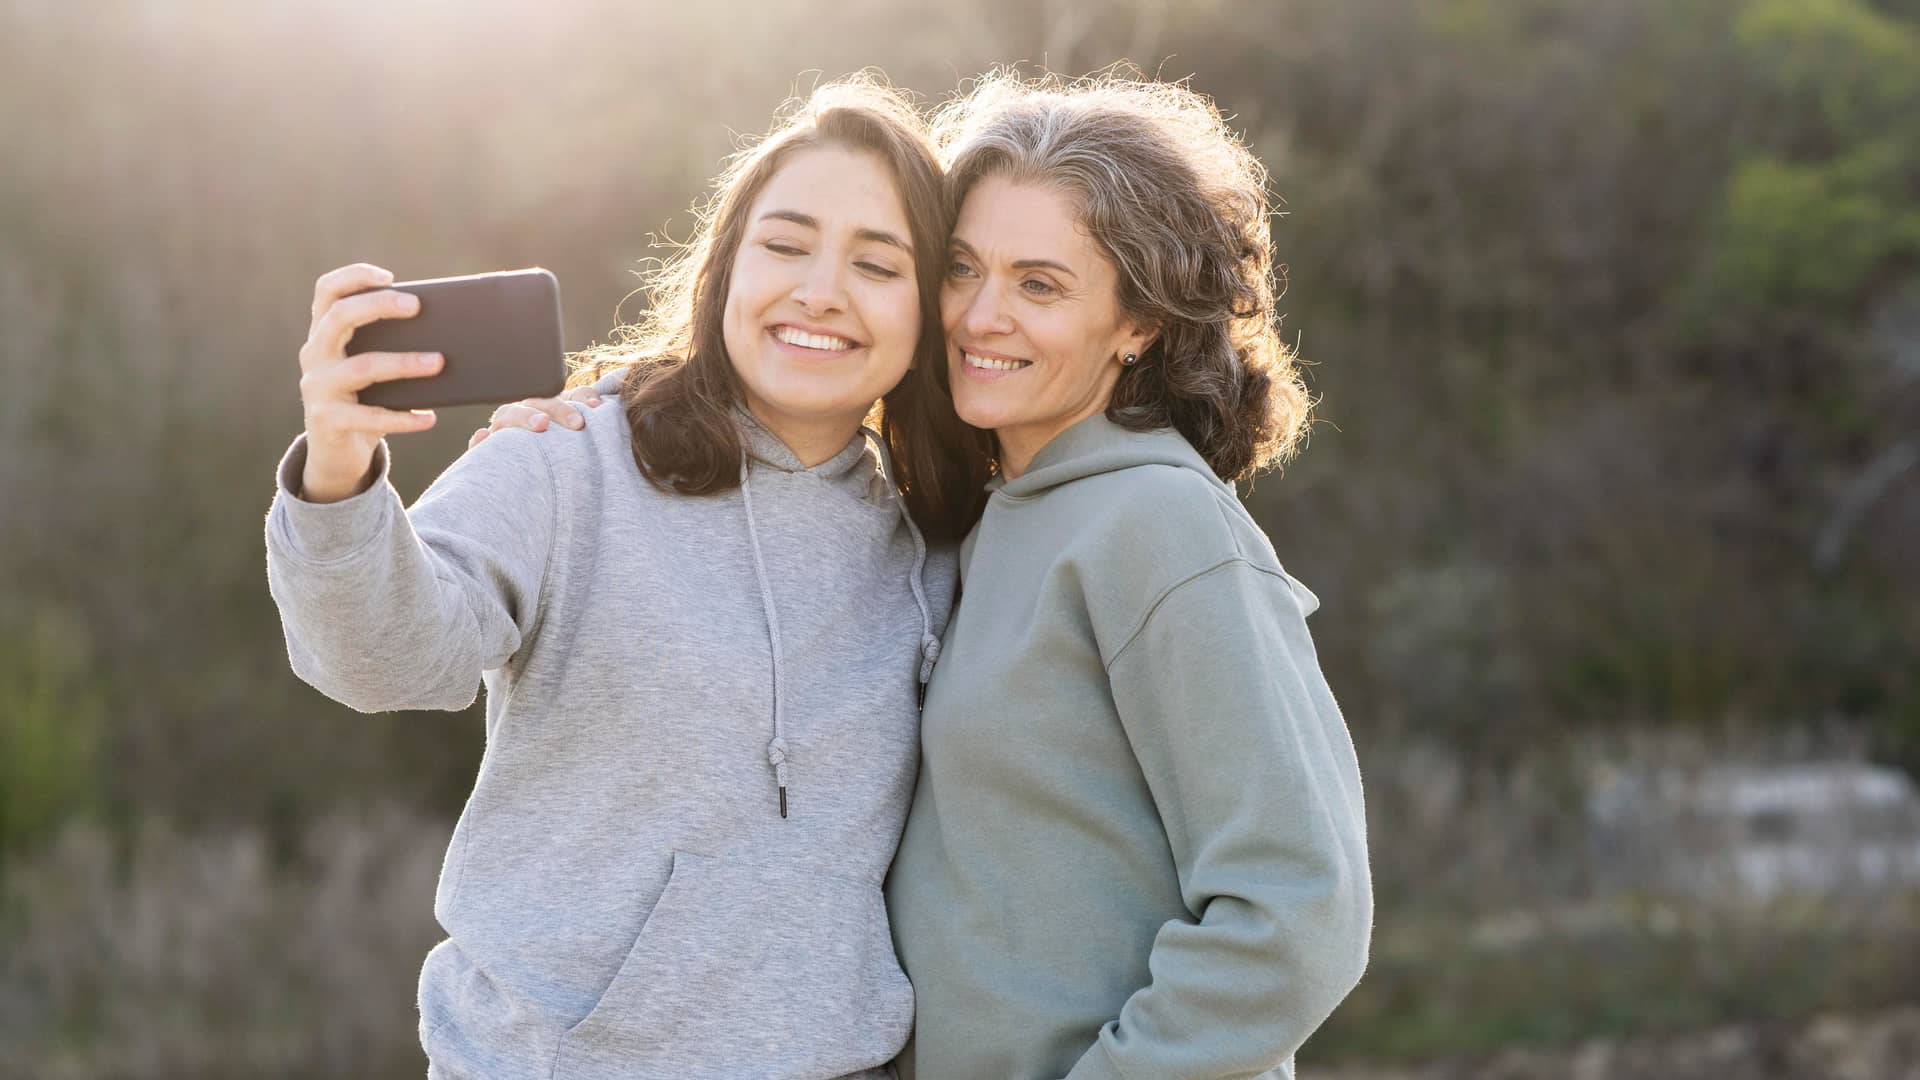 Madre e hija se hacen un selfie sonrientes para celebrar el cambio de titularidad de su línea jazztel ahora que la hija es mas mayor